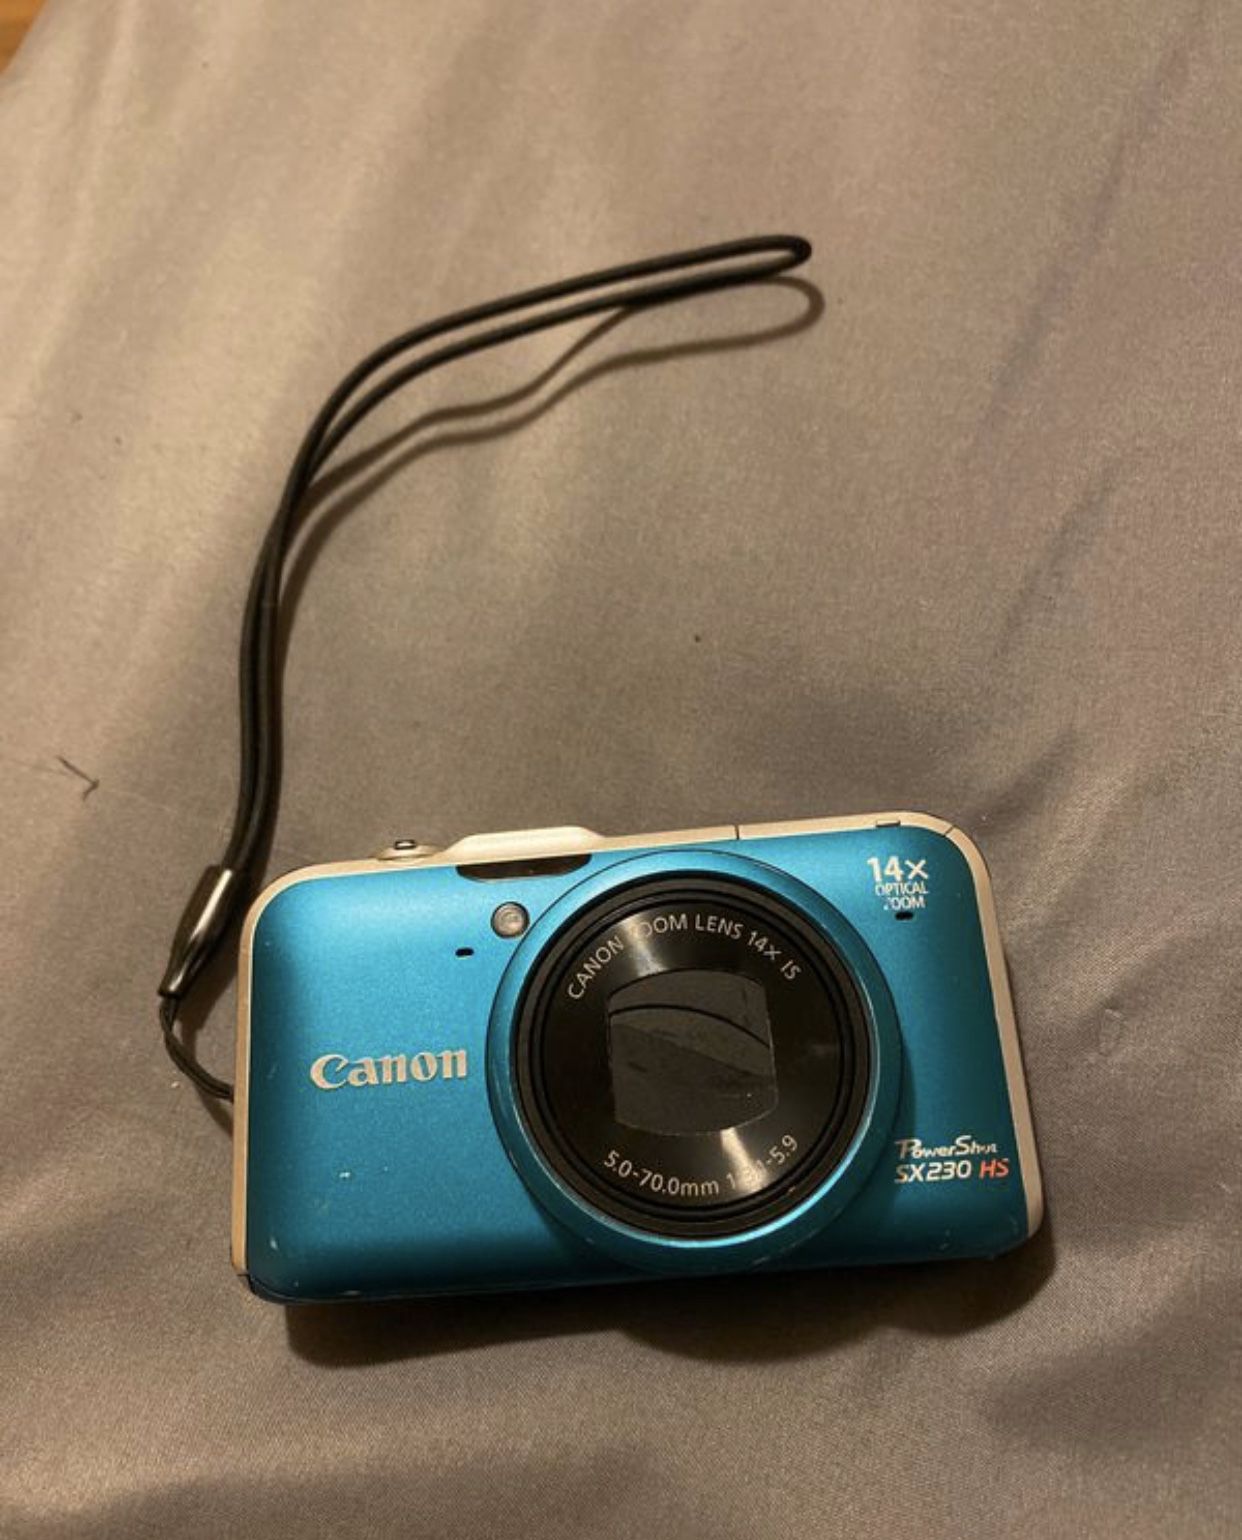 Canon SX 230 HS 12 megapixel digital camera